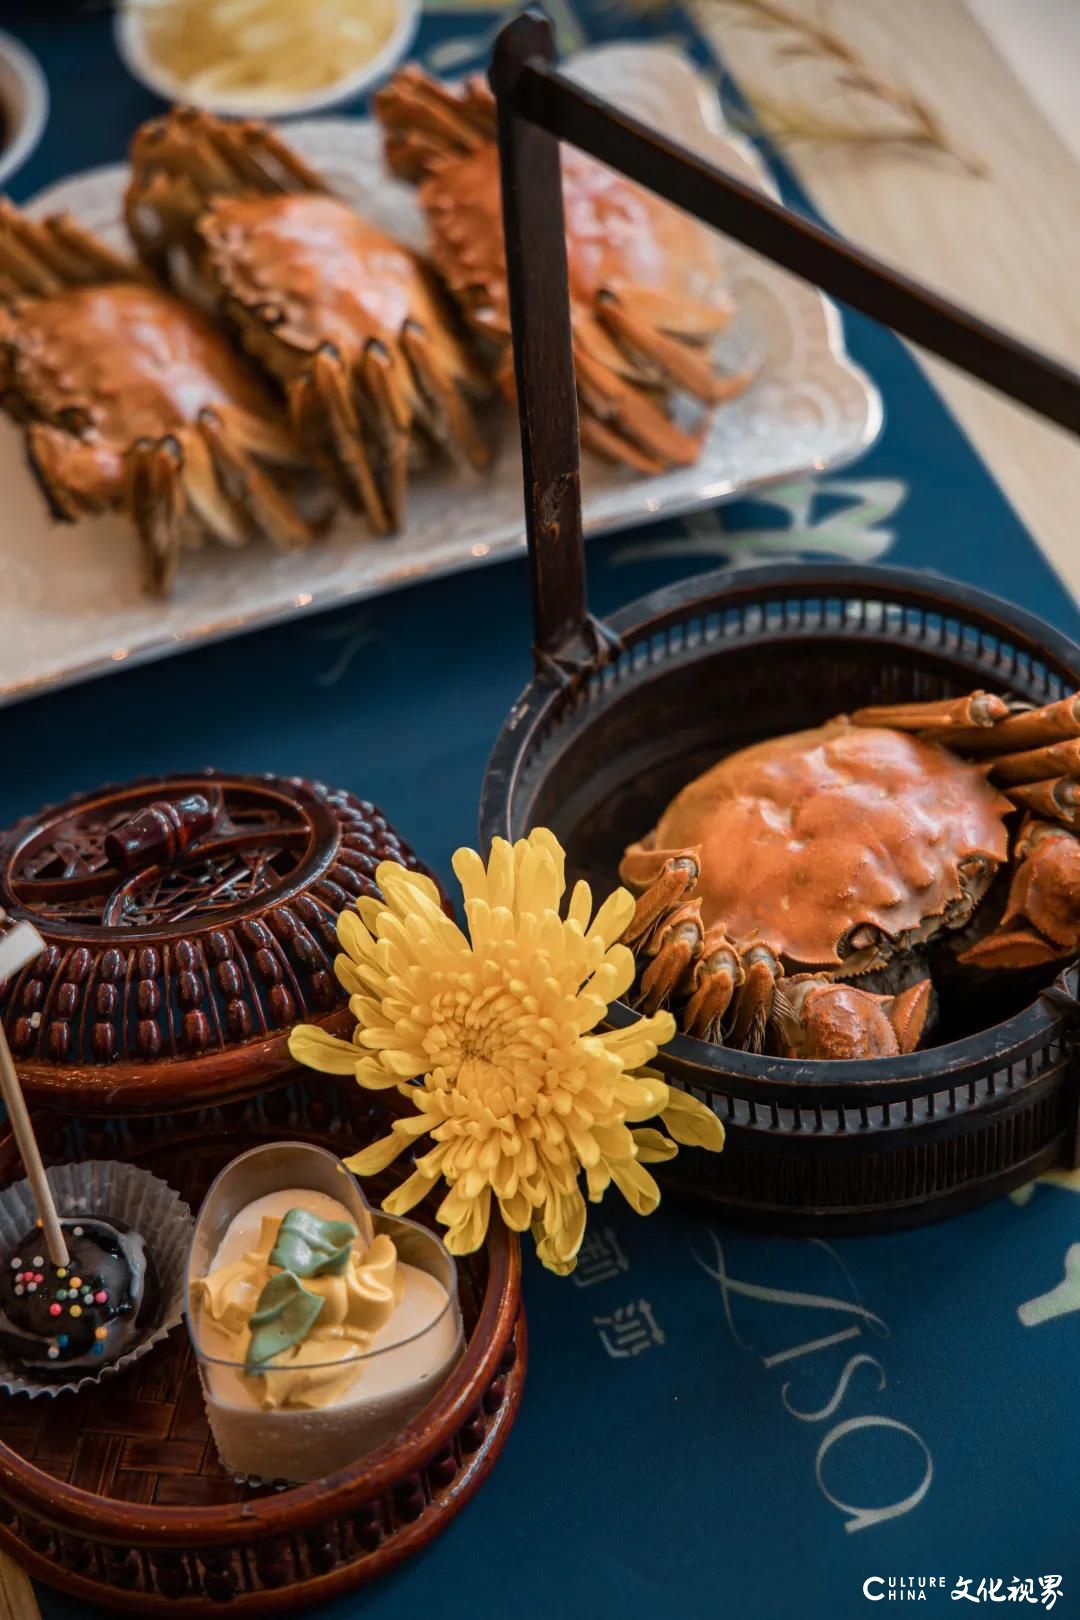 生活就要满满的仪式感，时尚“蟹宴”让莎蔓莉莎在美味中与秋天“蟹逅”